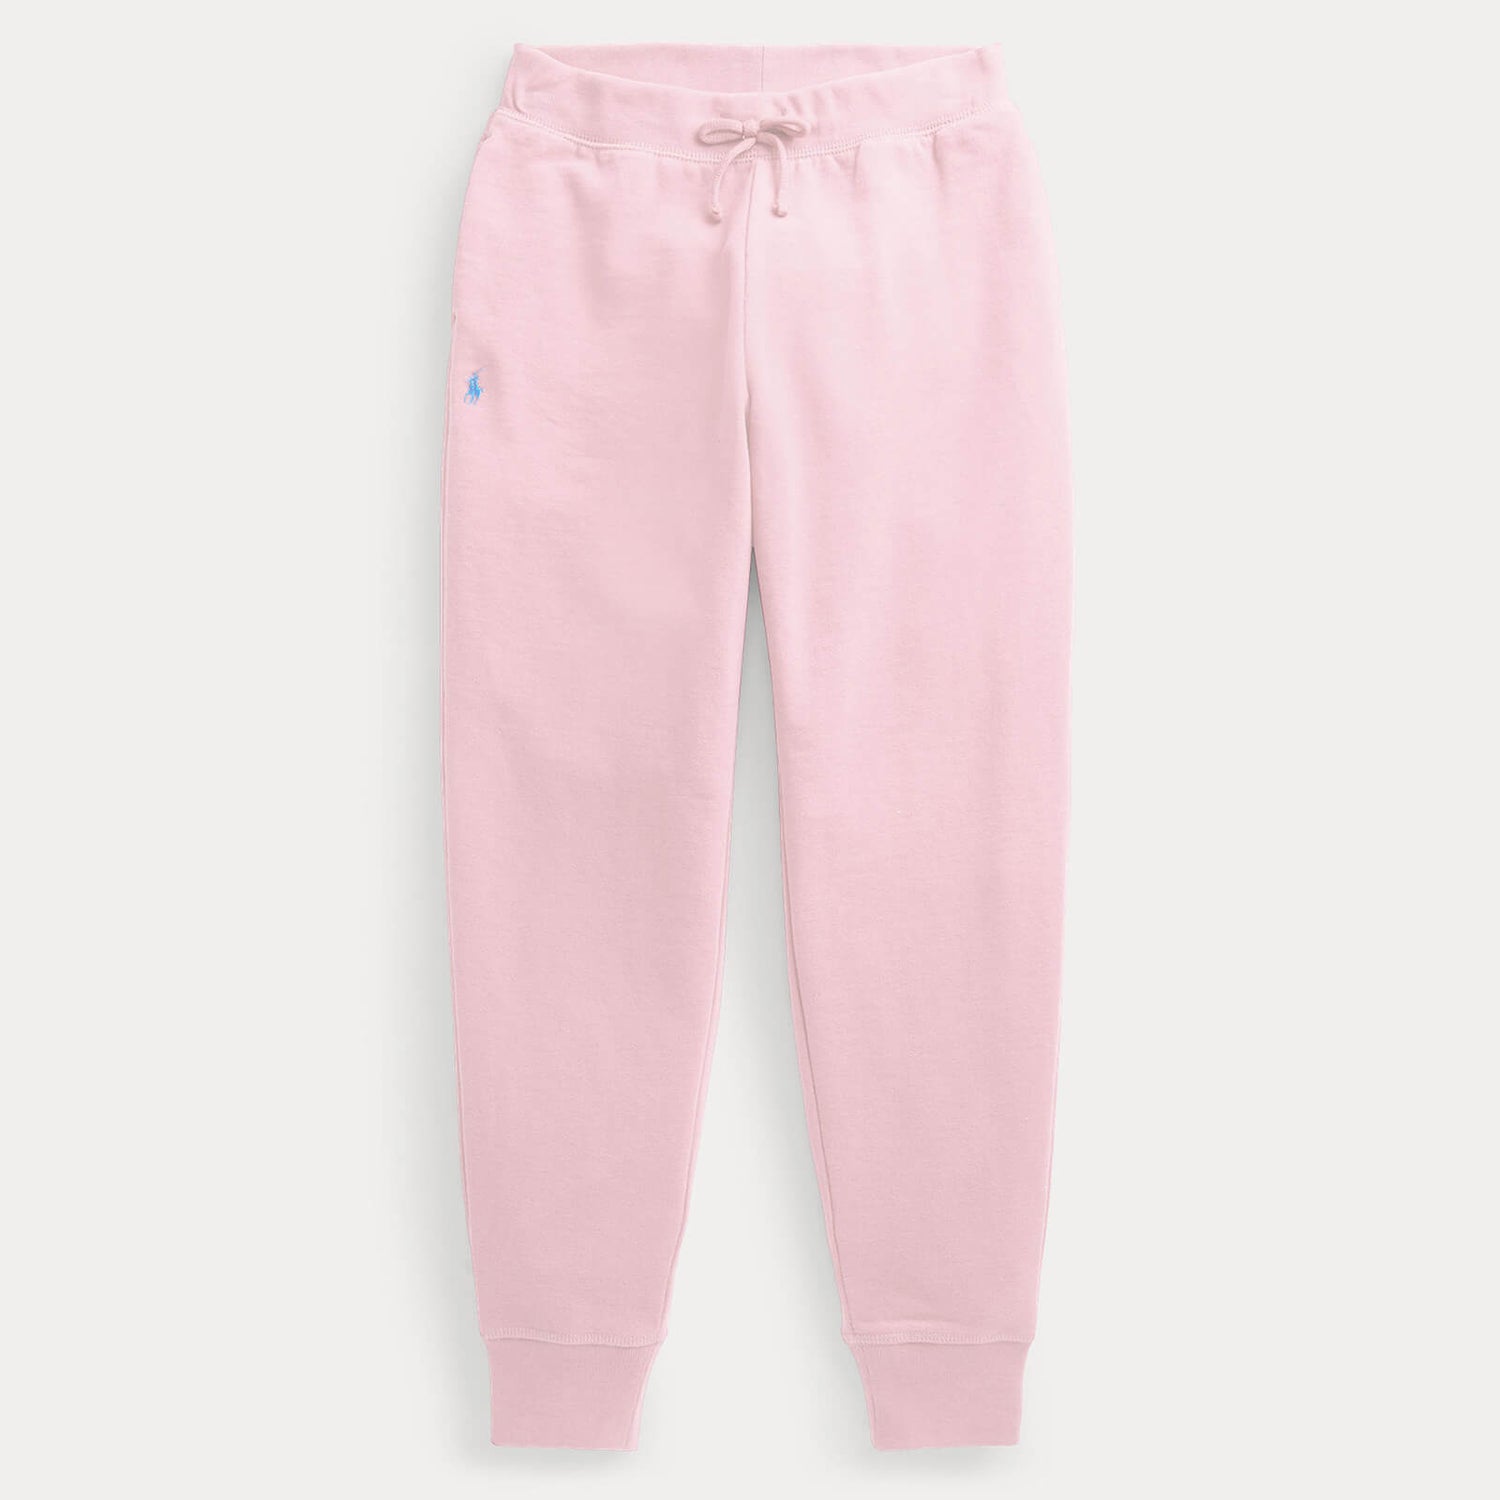 Ralph Lauren Girls' Fleece Joggers - Hint Of Pink - 6 Years